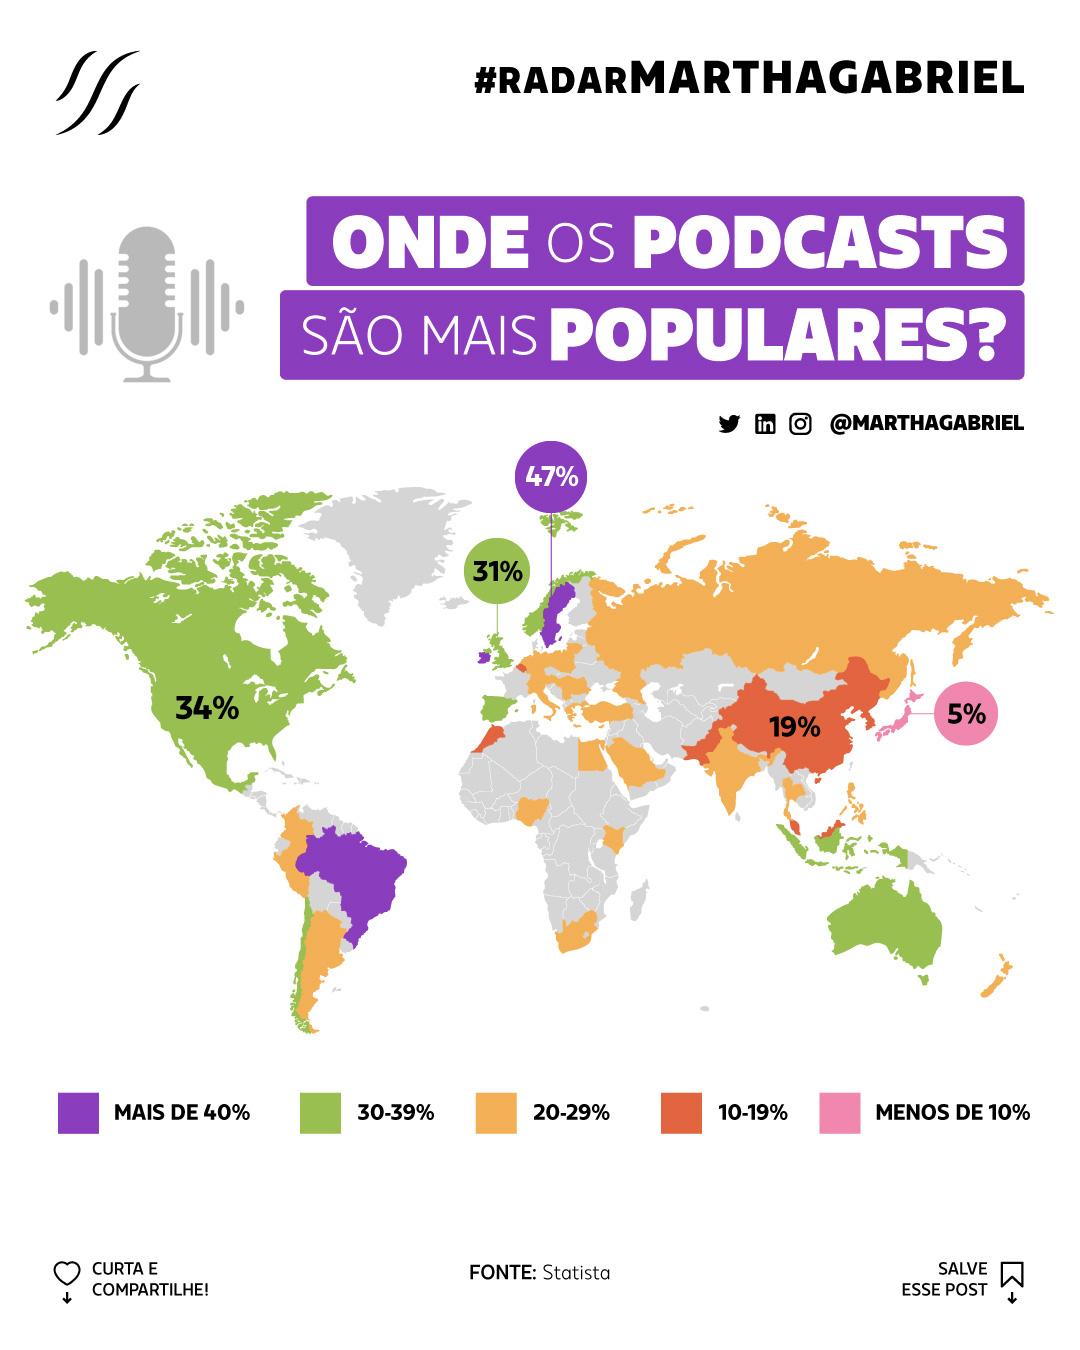 Onde os podcasts são mais populares?